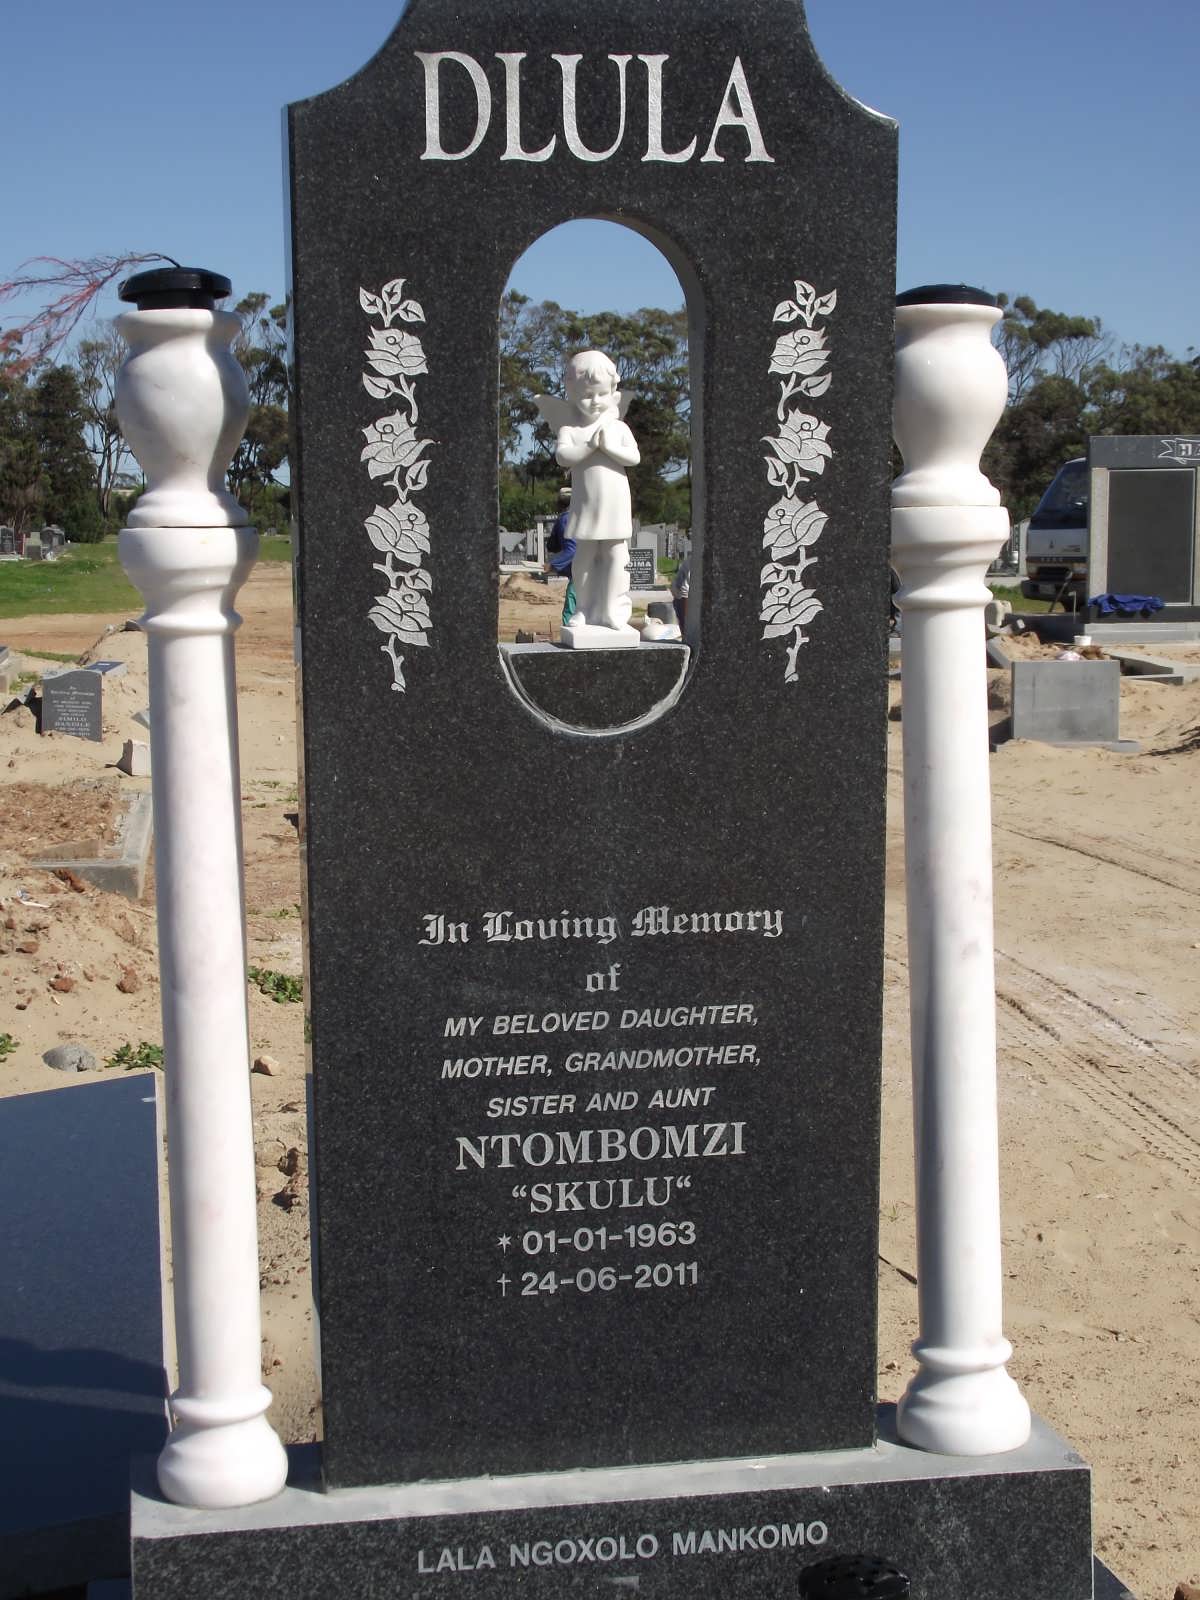 DLULA Ntombomzi 1963-2011